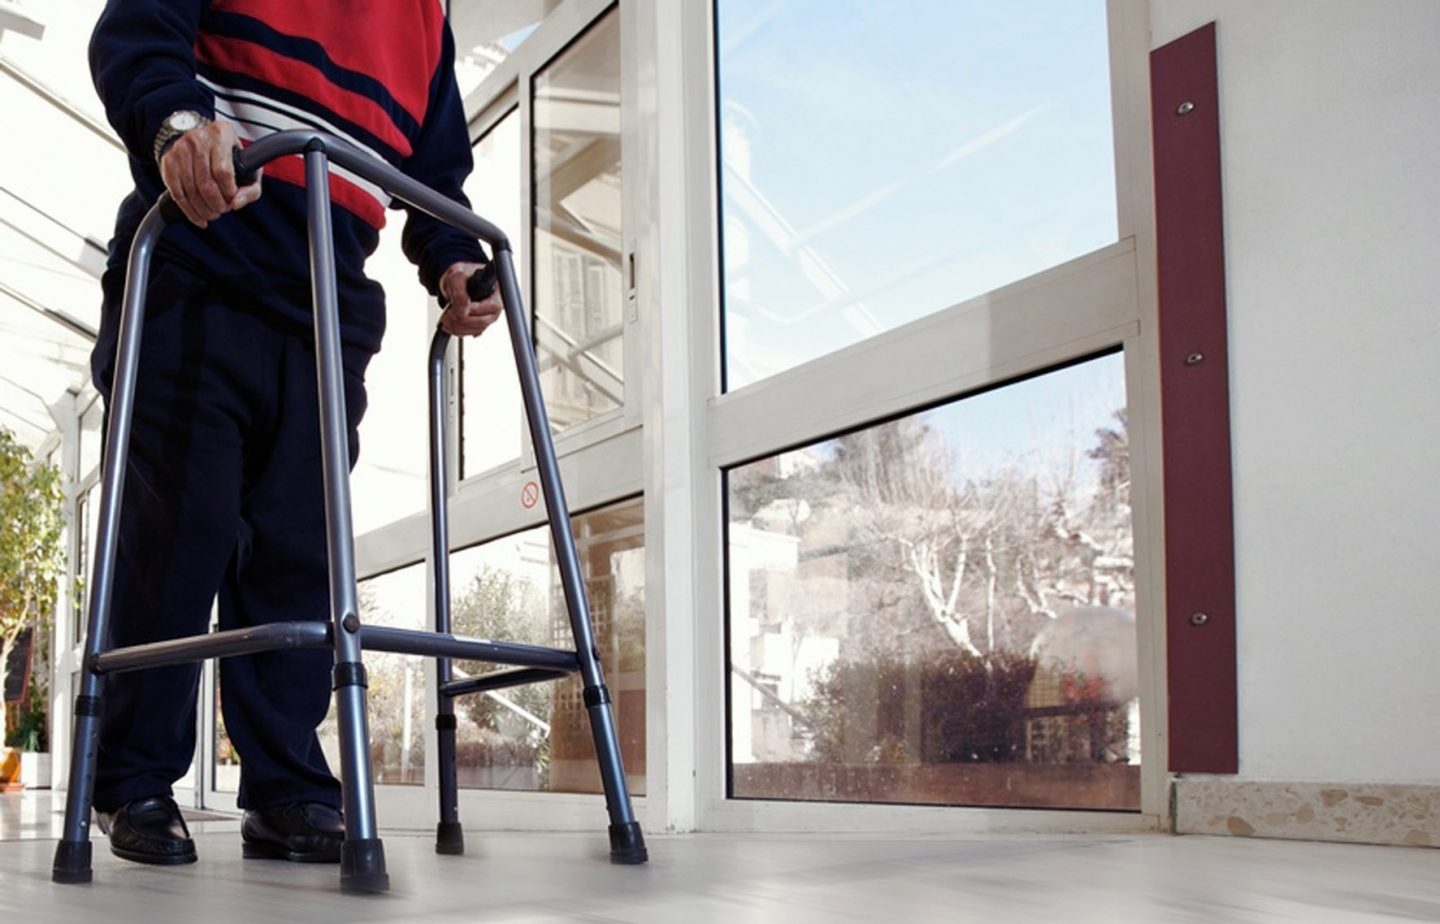 Gobierno y Ciudadanos ultiman una deducción por discapacitados y mayores a cargo de 1.200 euros al año.